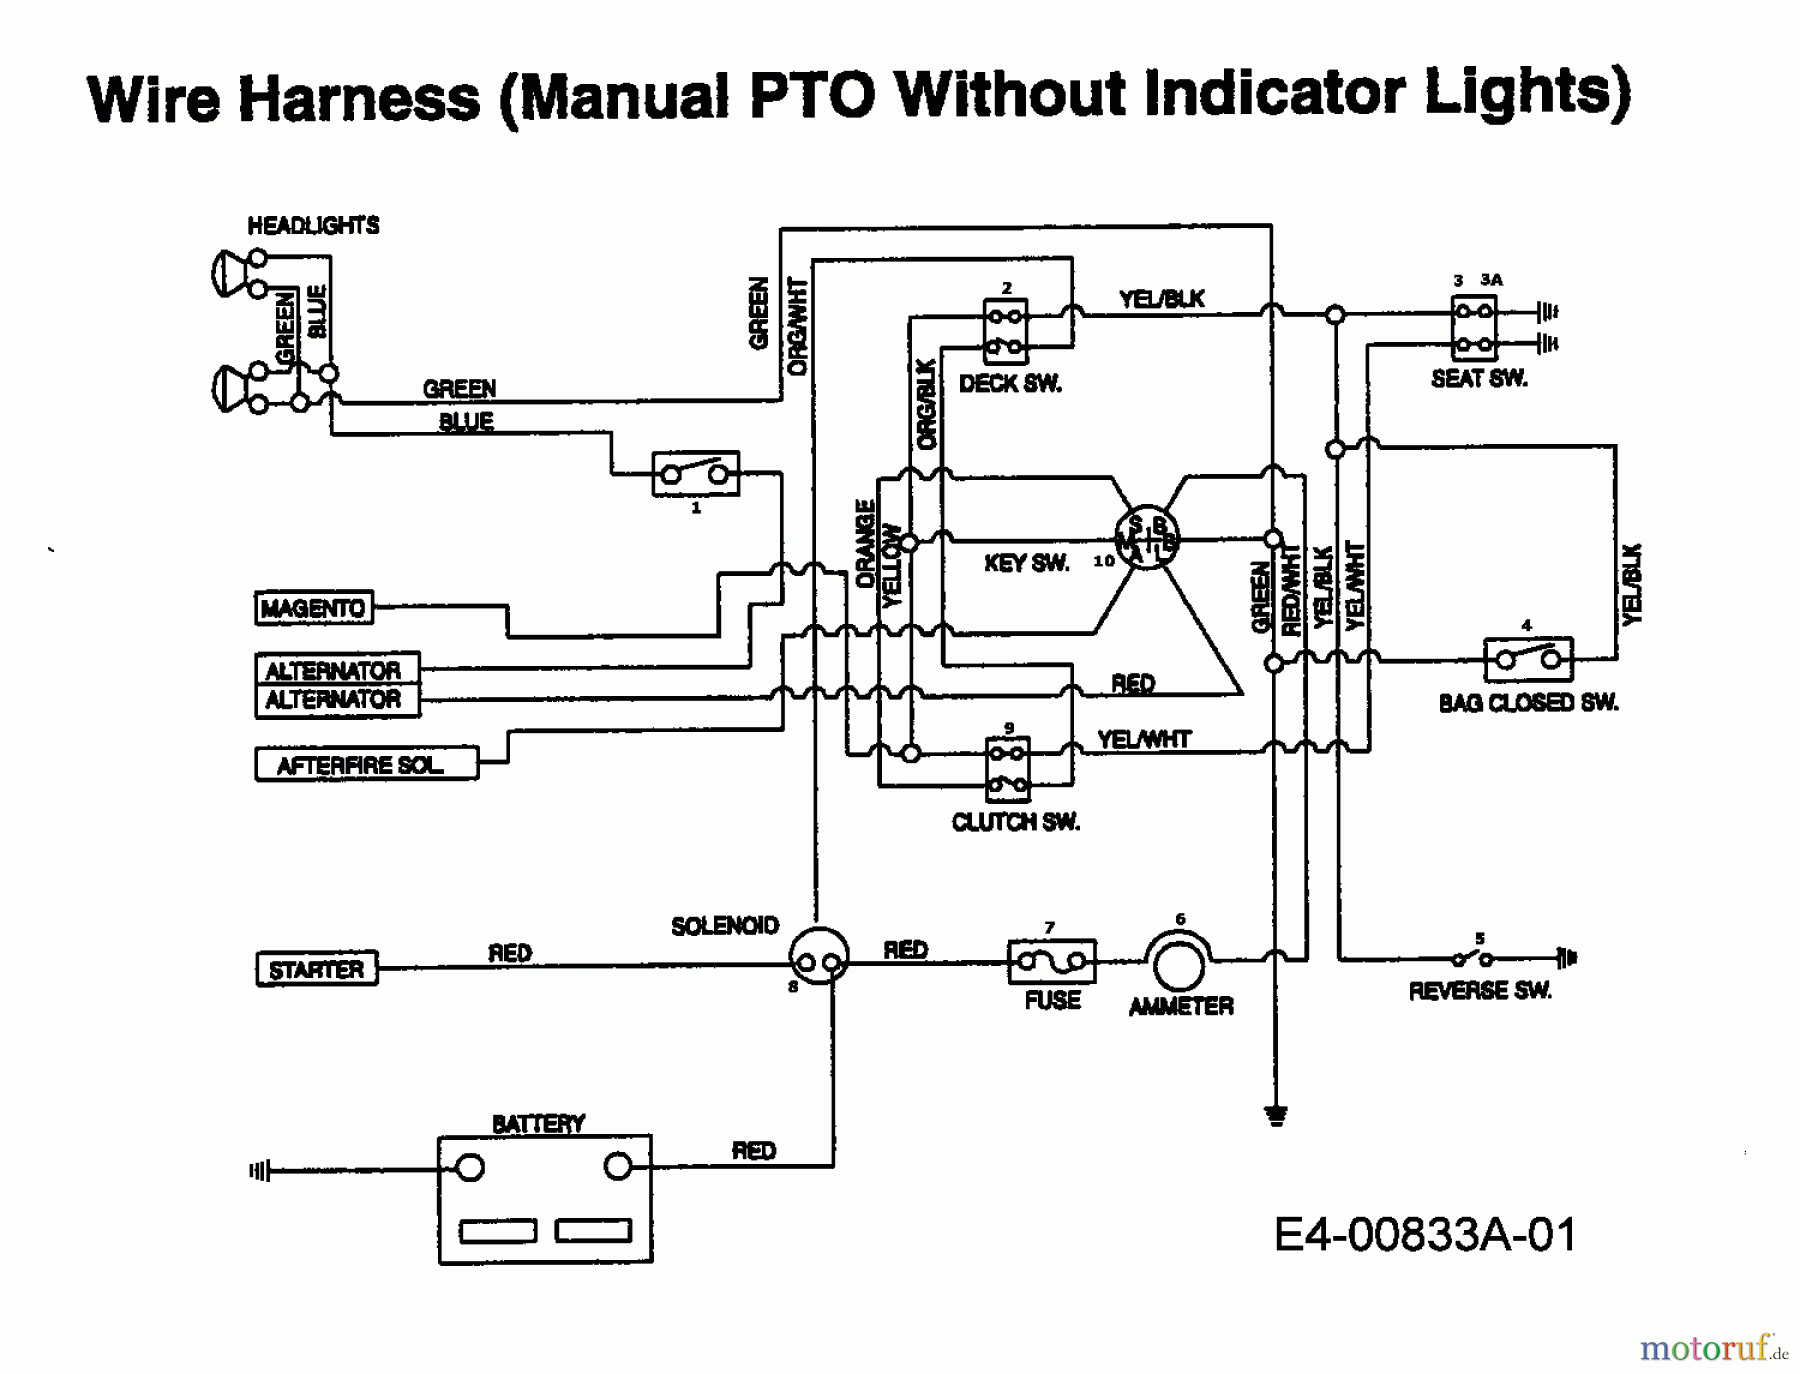  Raiffeisen Tracteurs de pelouse RMH 15/102 H 13AD793N628  (1997) Plan électrique sans lampe de contrôle